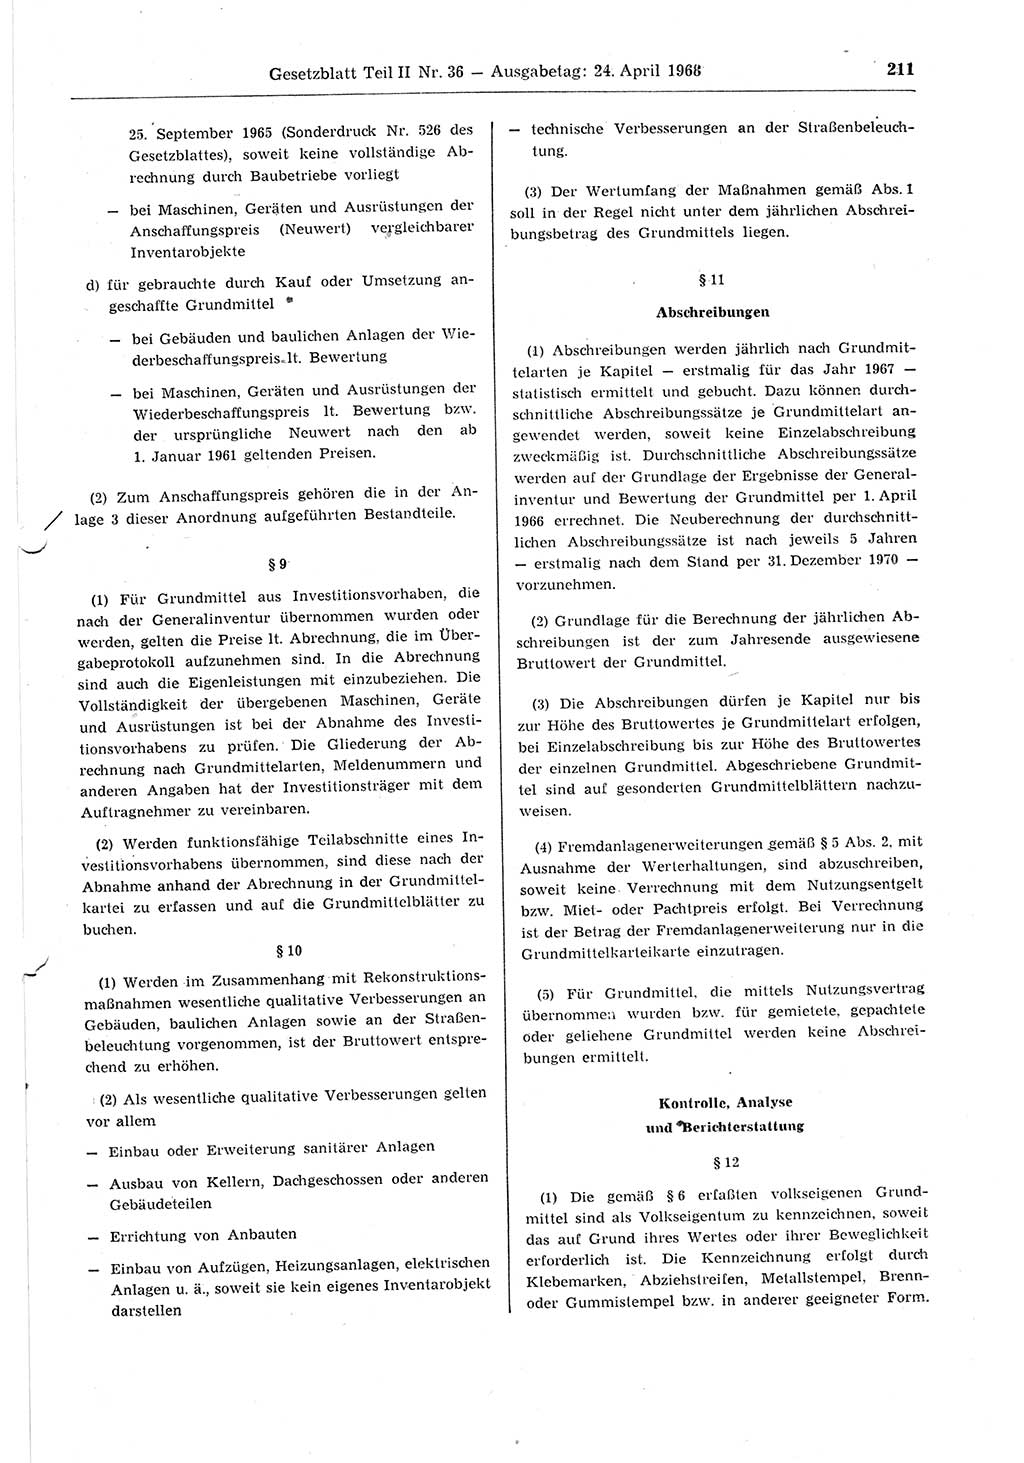 Gesetzblatt (GBl.) der Deutschen Demokratischen Republik (DDR) Teil ⅠⅠ 1968, Seite 211 (GBl. DDR ⅠⅠ 1968, S. 211)